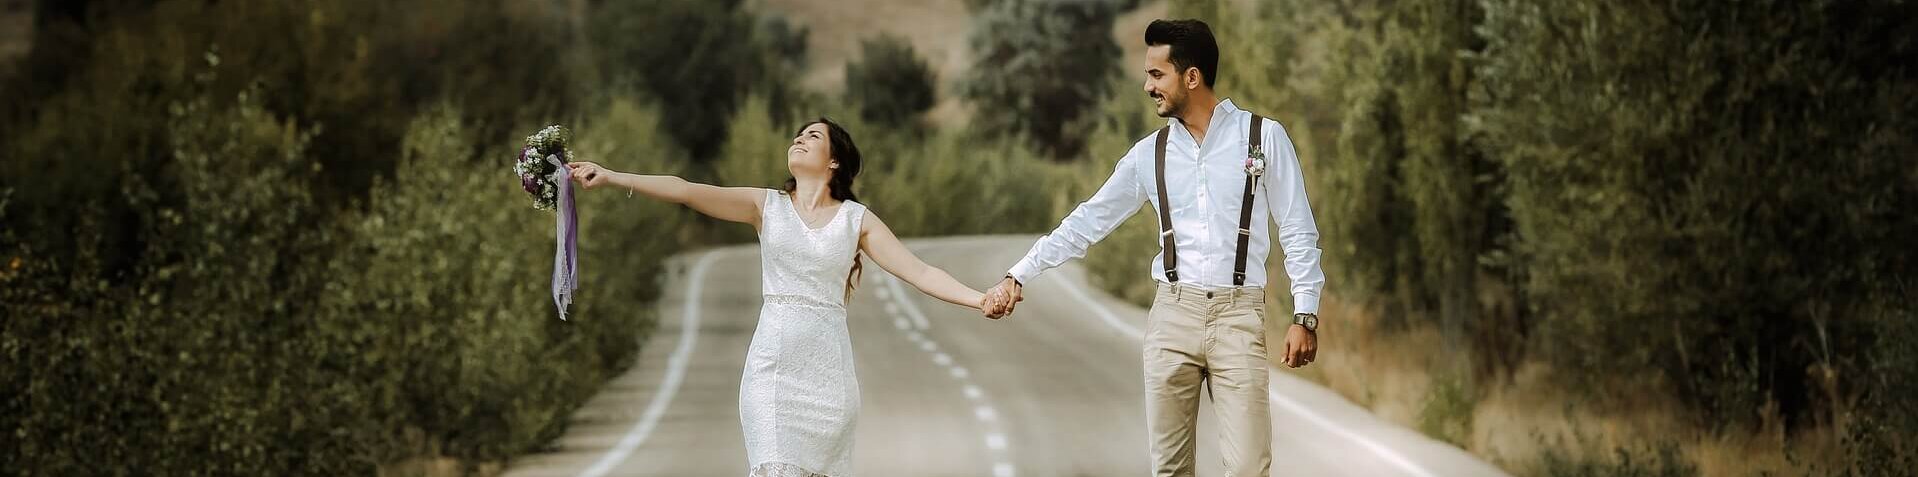 Ein glückliches Brautpaar läuft auf einer Straße und hält sich die Hände